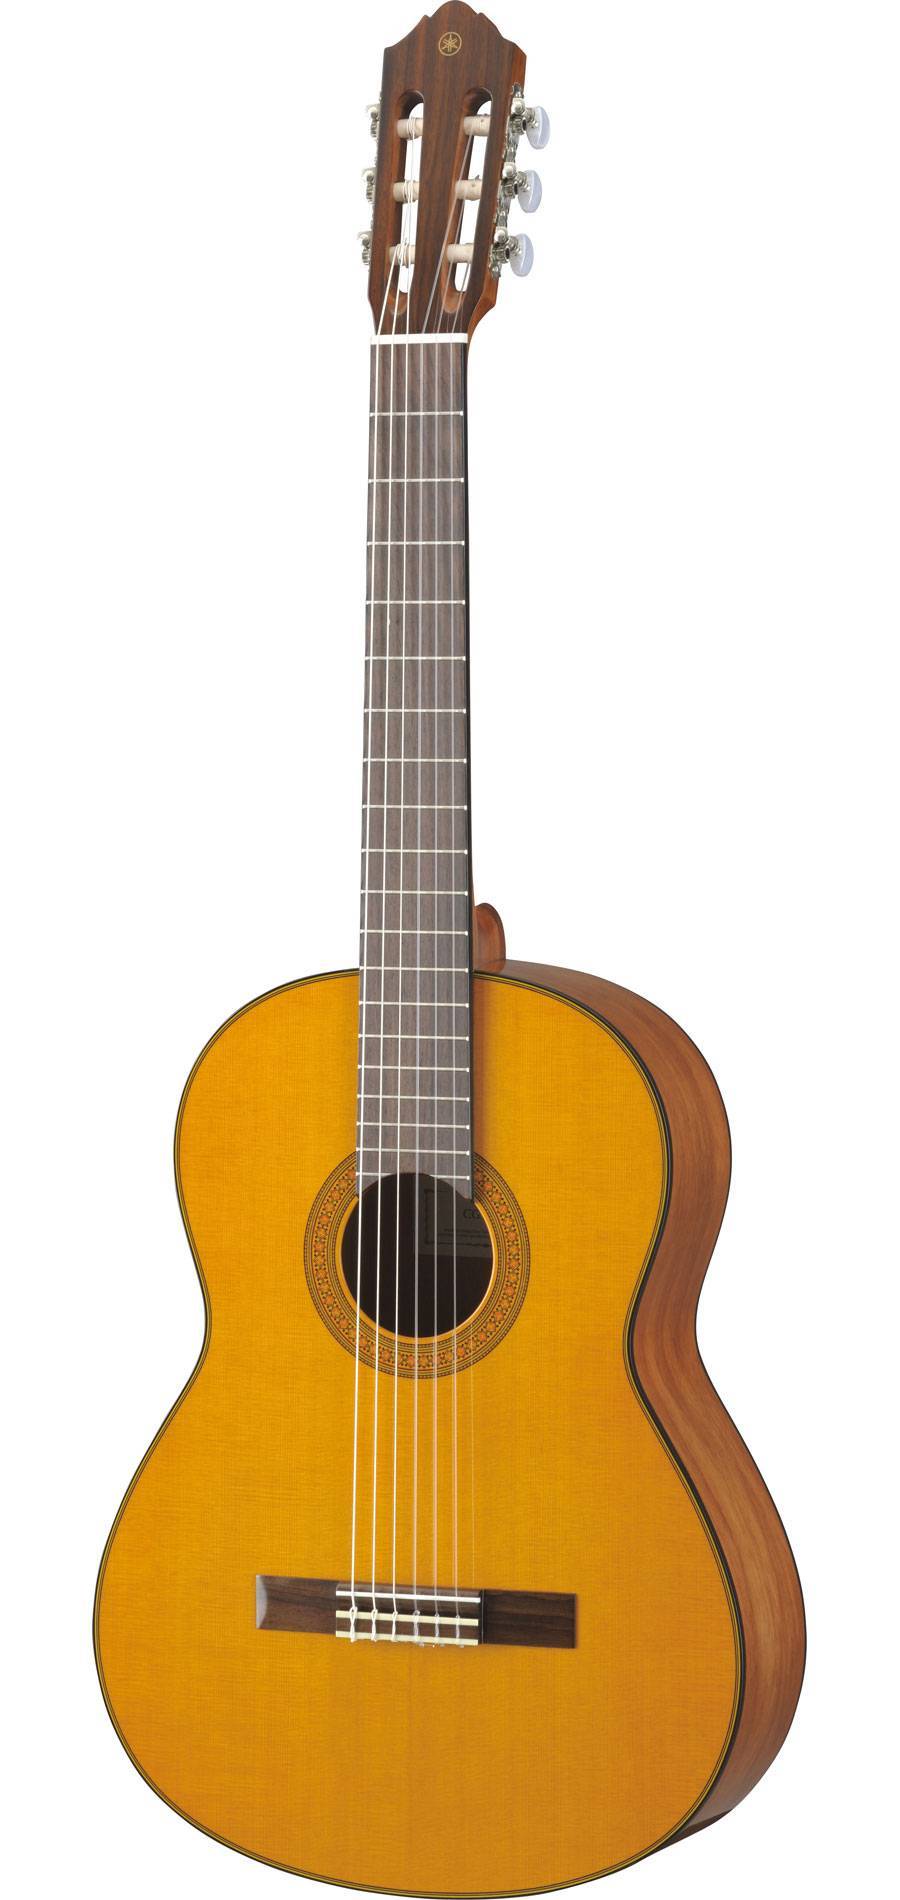 Гитара классическая Yamaha CG142C